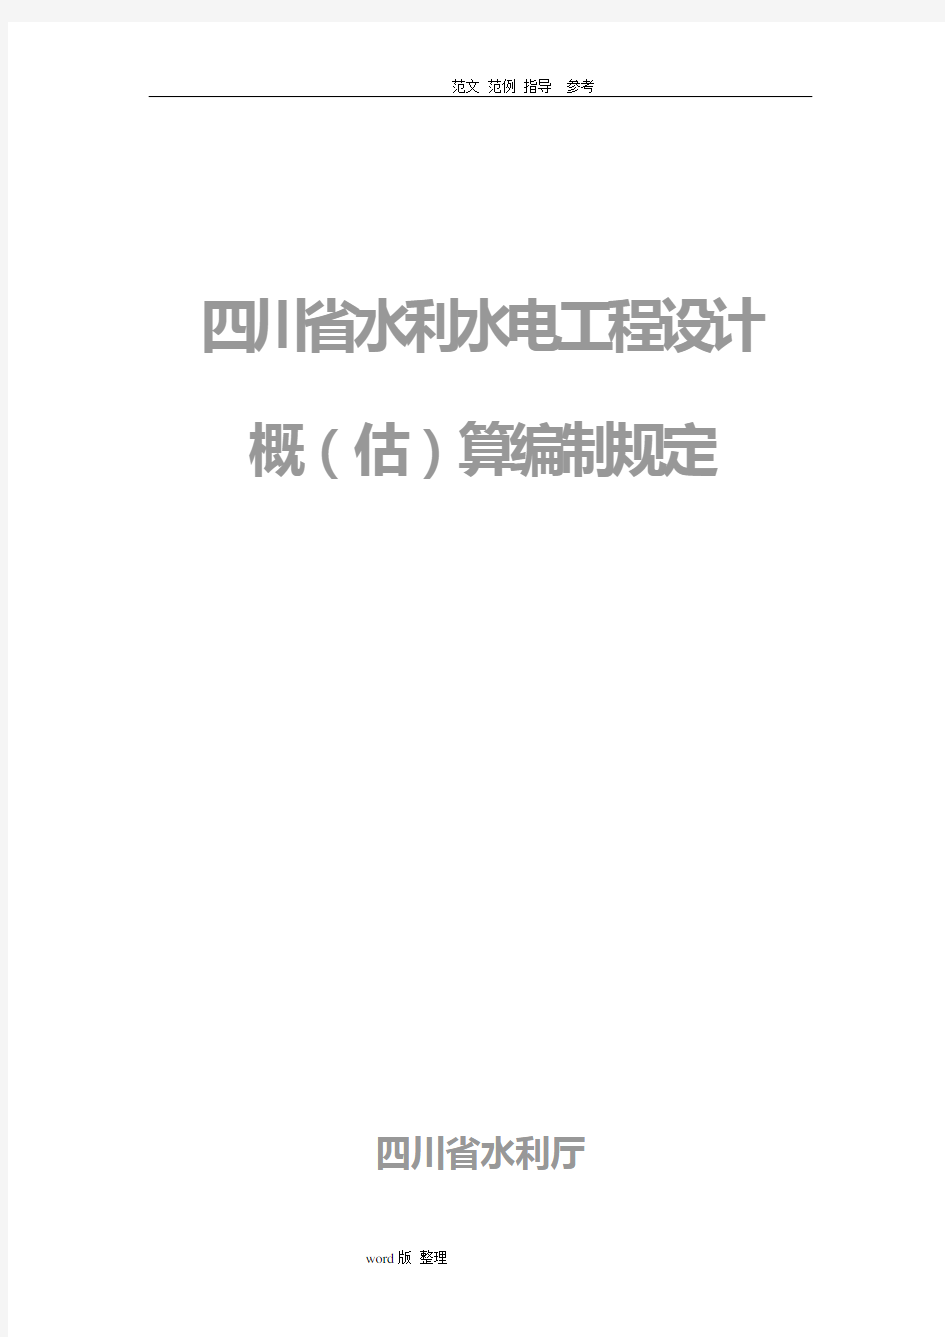 四川省水利水电工程设计概(估)算编制规定(2007)